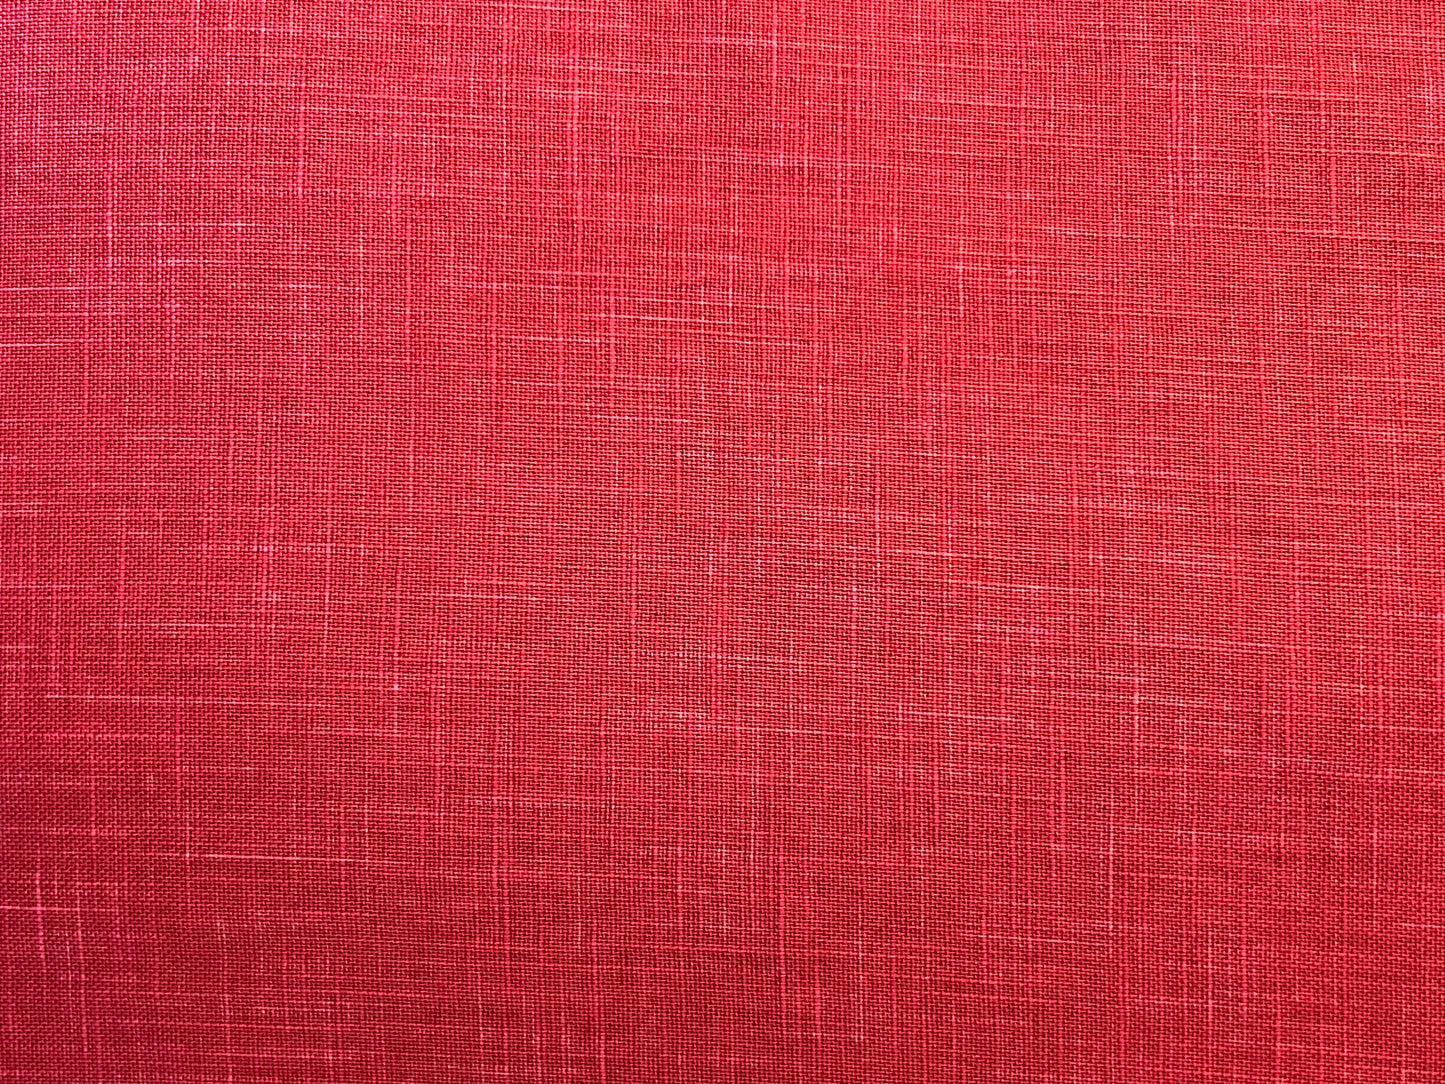 Japanese Zabuton Floor Pillow Mura Red